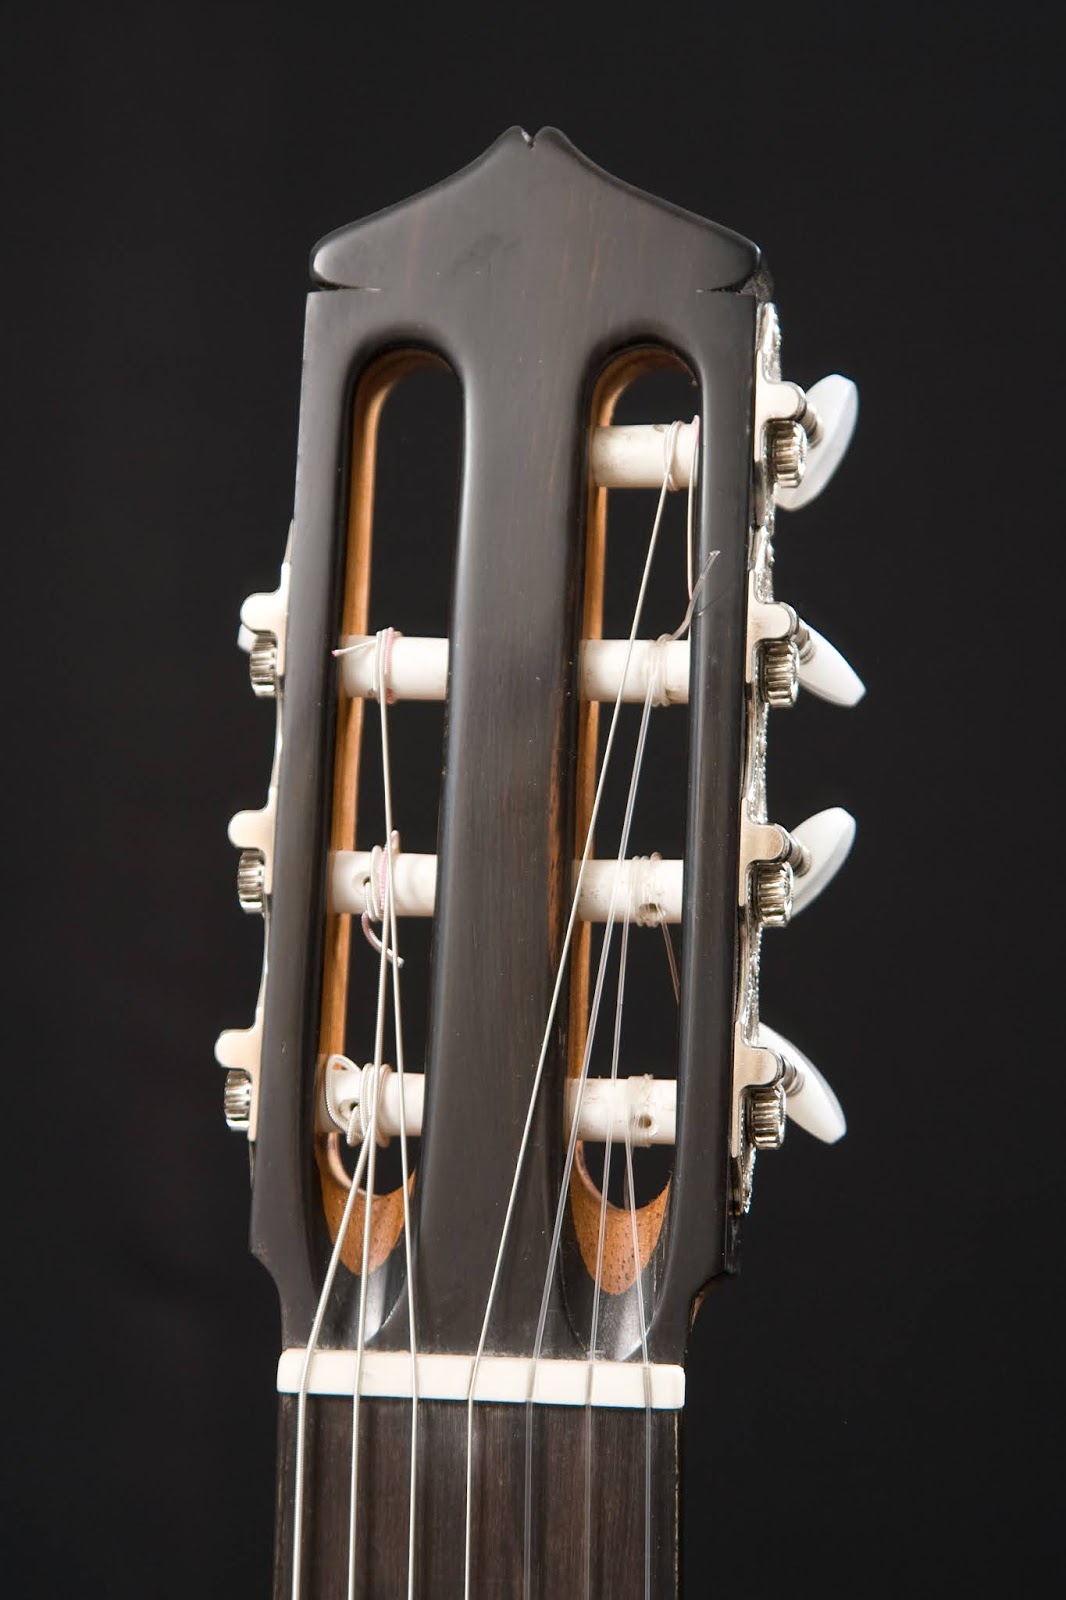 Guitarras custom Cucculelli, scale Rosso and 650 por construídas ~ Abete Flamenco Rodolfo guitar, mm. Luthier: Blanca